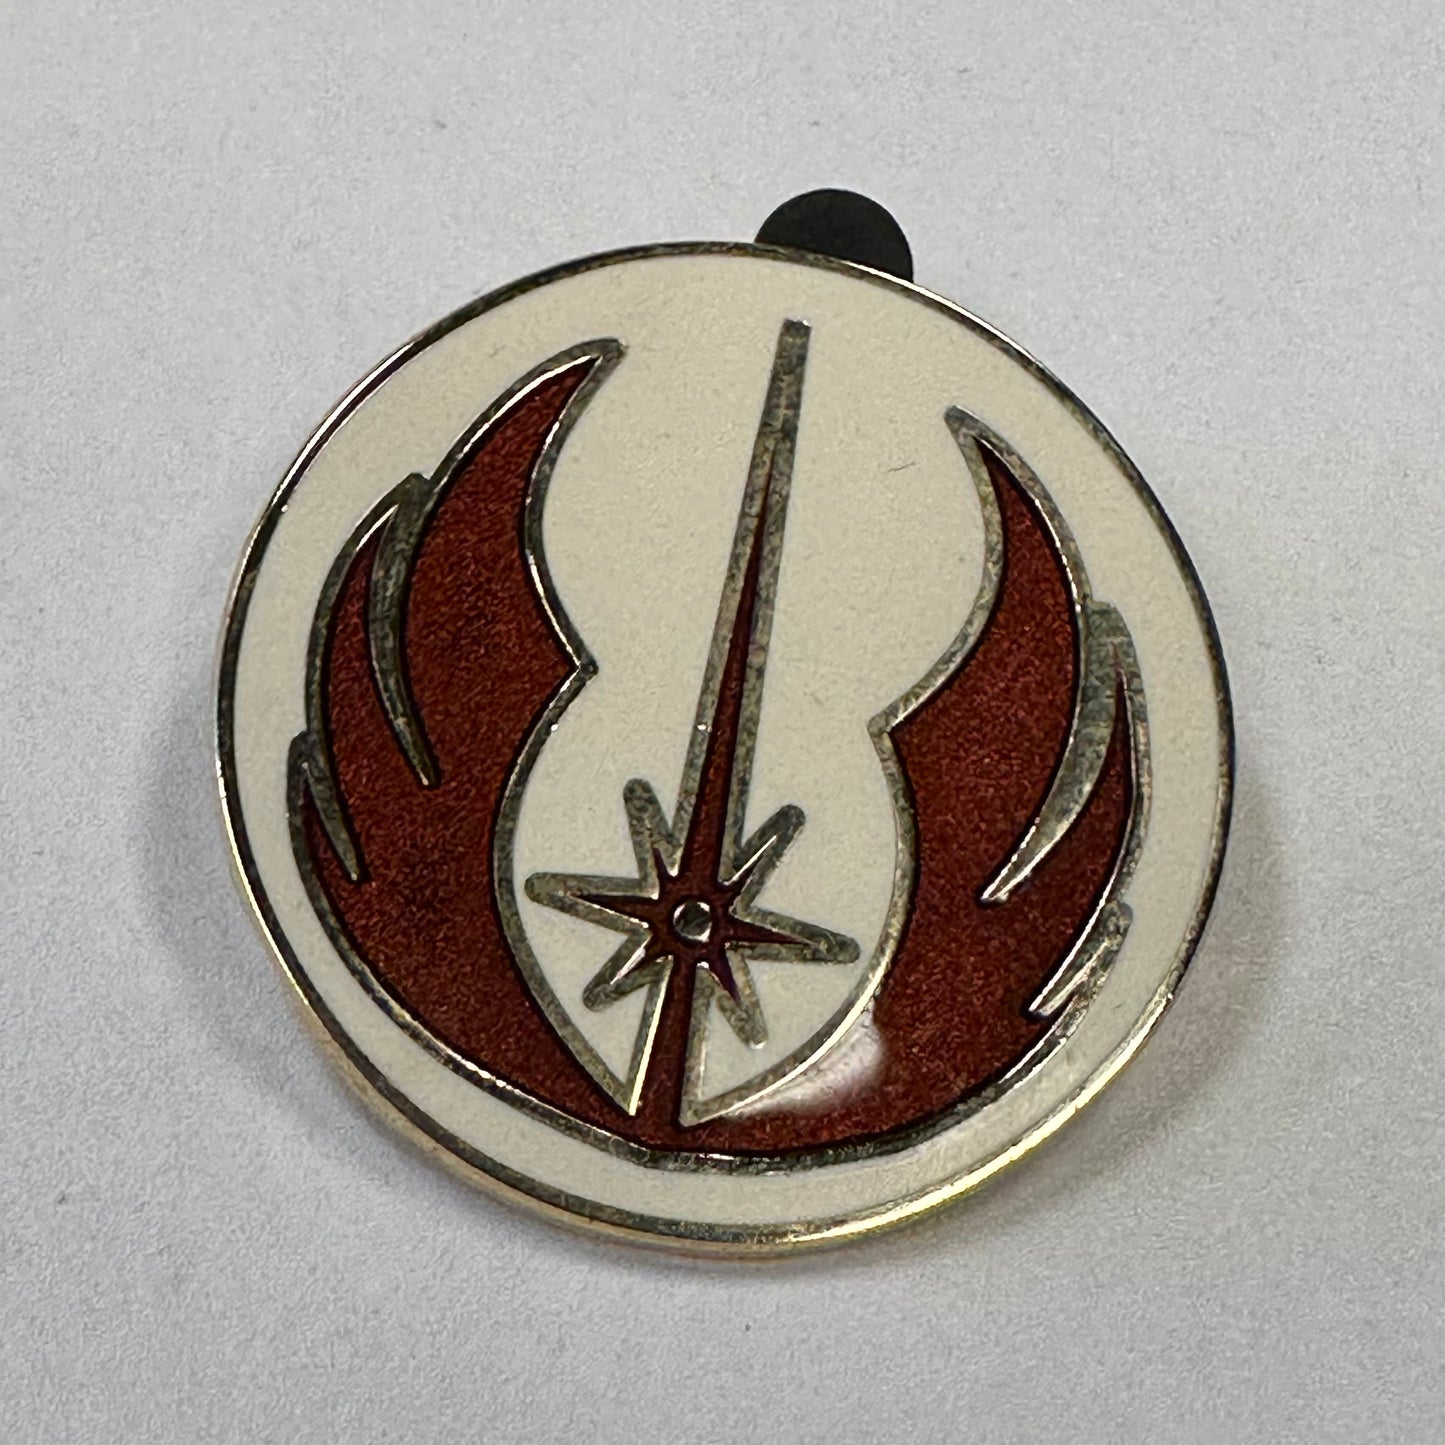 Star Wars Jedi Order Pin